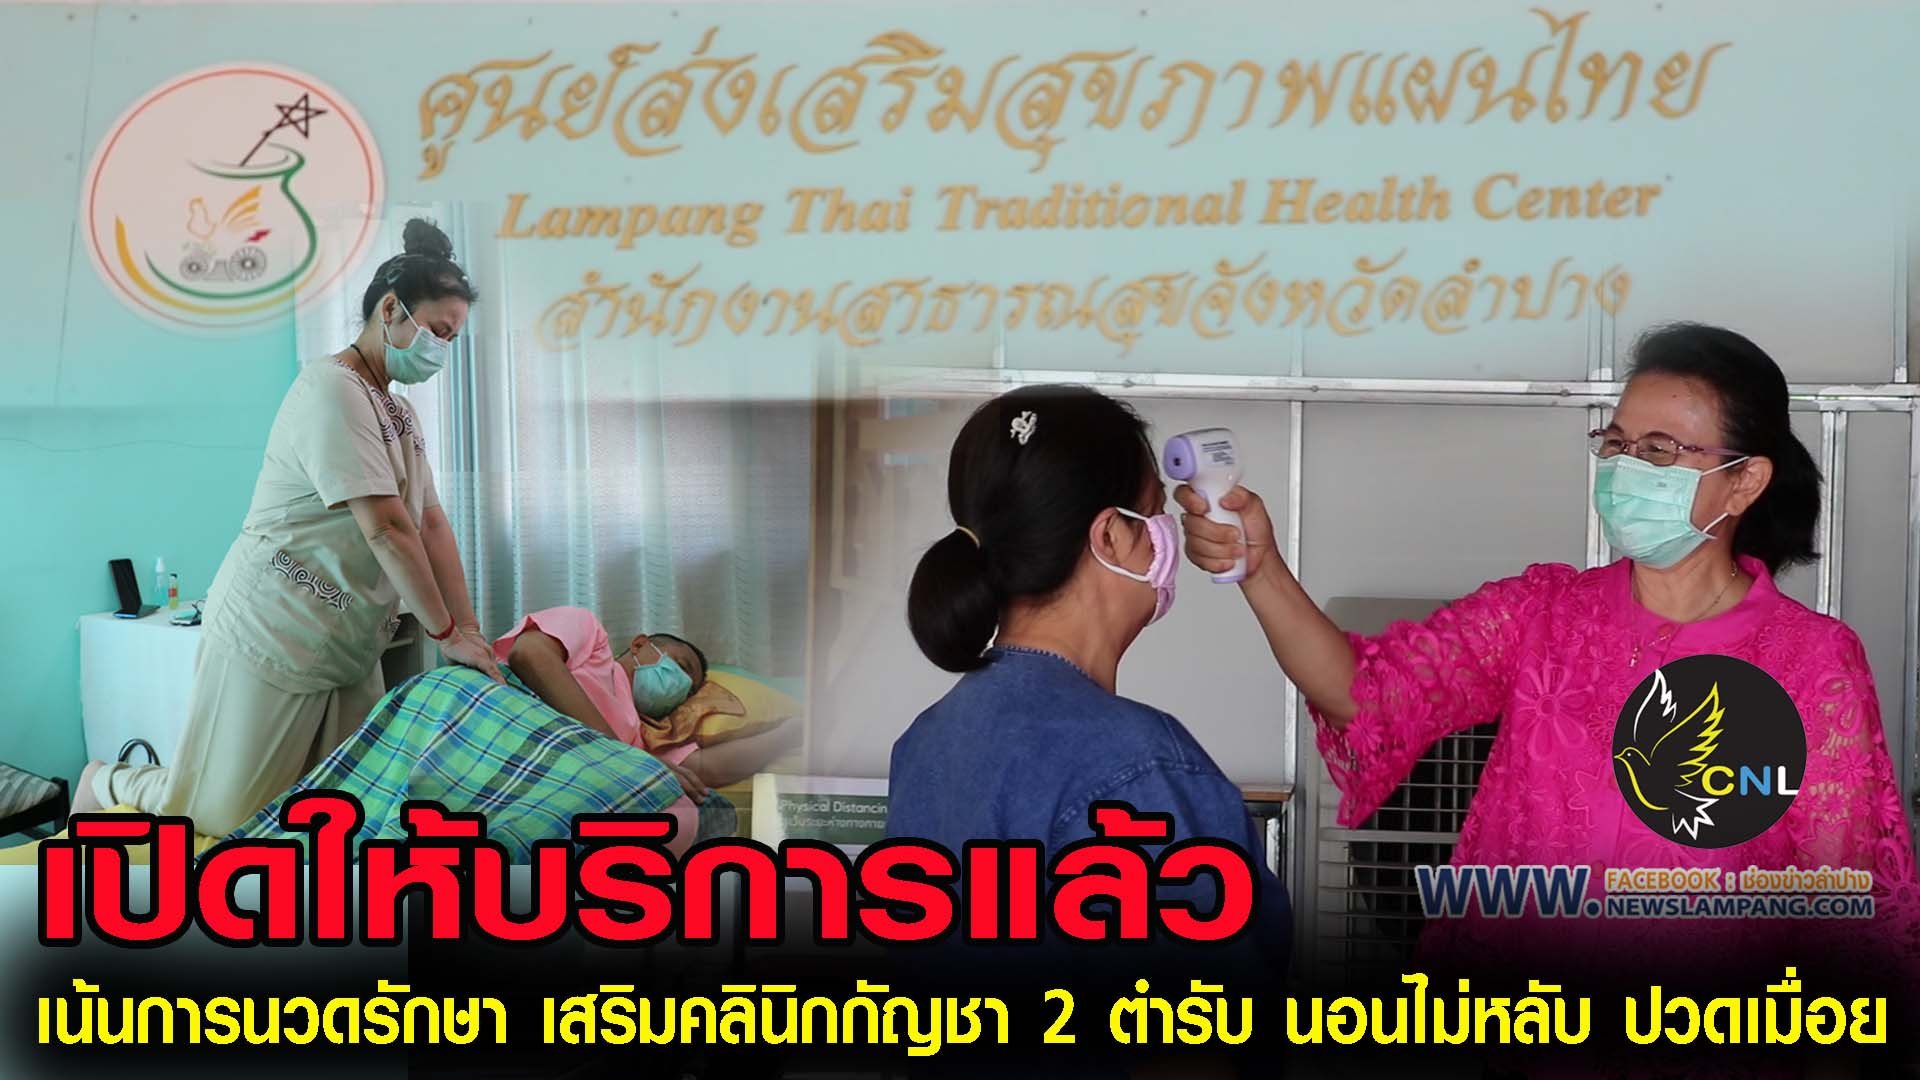 ศูนย์ส่งเสริมสุขภาพแผนไทย สสจ.ลำปางเริ่มเปิดให้บริการ แต่เน้นเฉพาะนวดเพื่อรักษา งดบริการนวดผ่อนคลาย ลิมิตคนละ1ชั่วโมง พร้อมเสริมคลินิกกัญชาสำหรับผู้ที่นอนไม่หลับ ปวดเมื่อร่างกาย